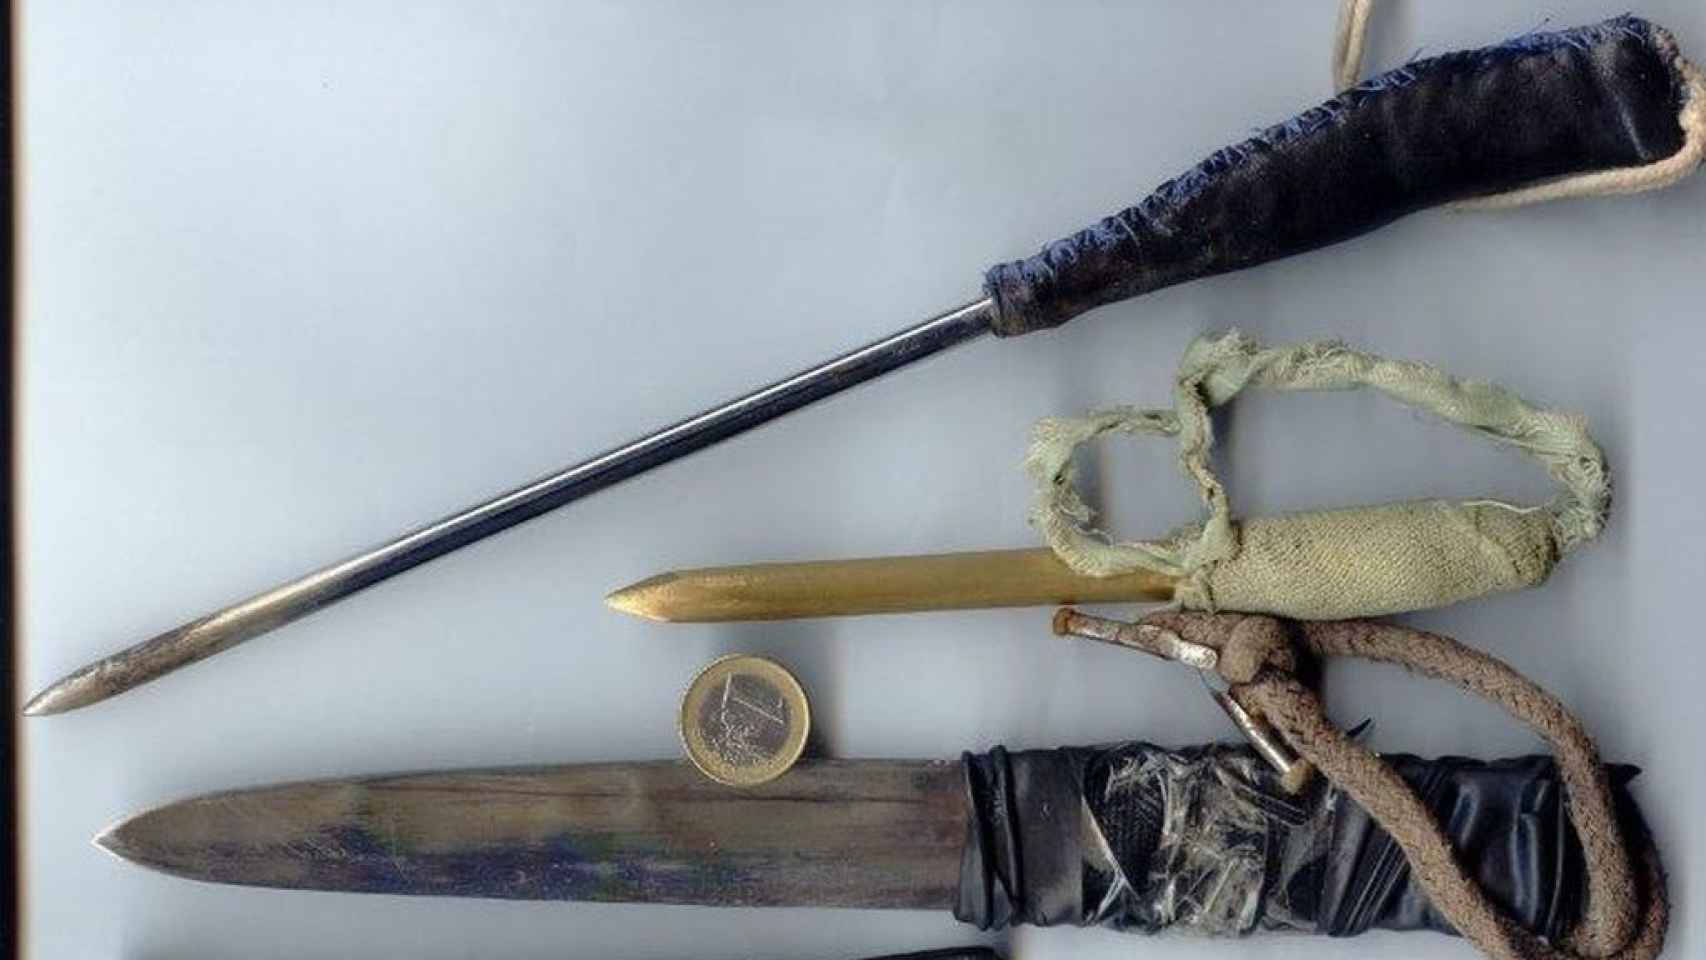 Armas artesanales que fabrican los presos para pelear.